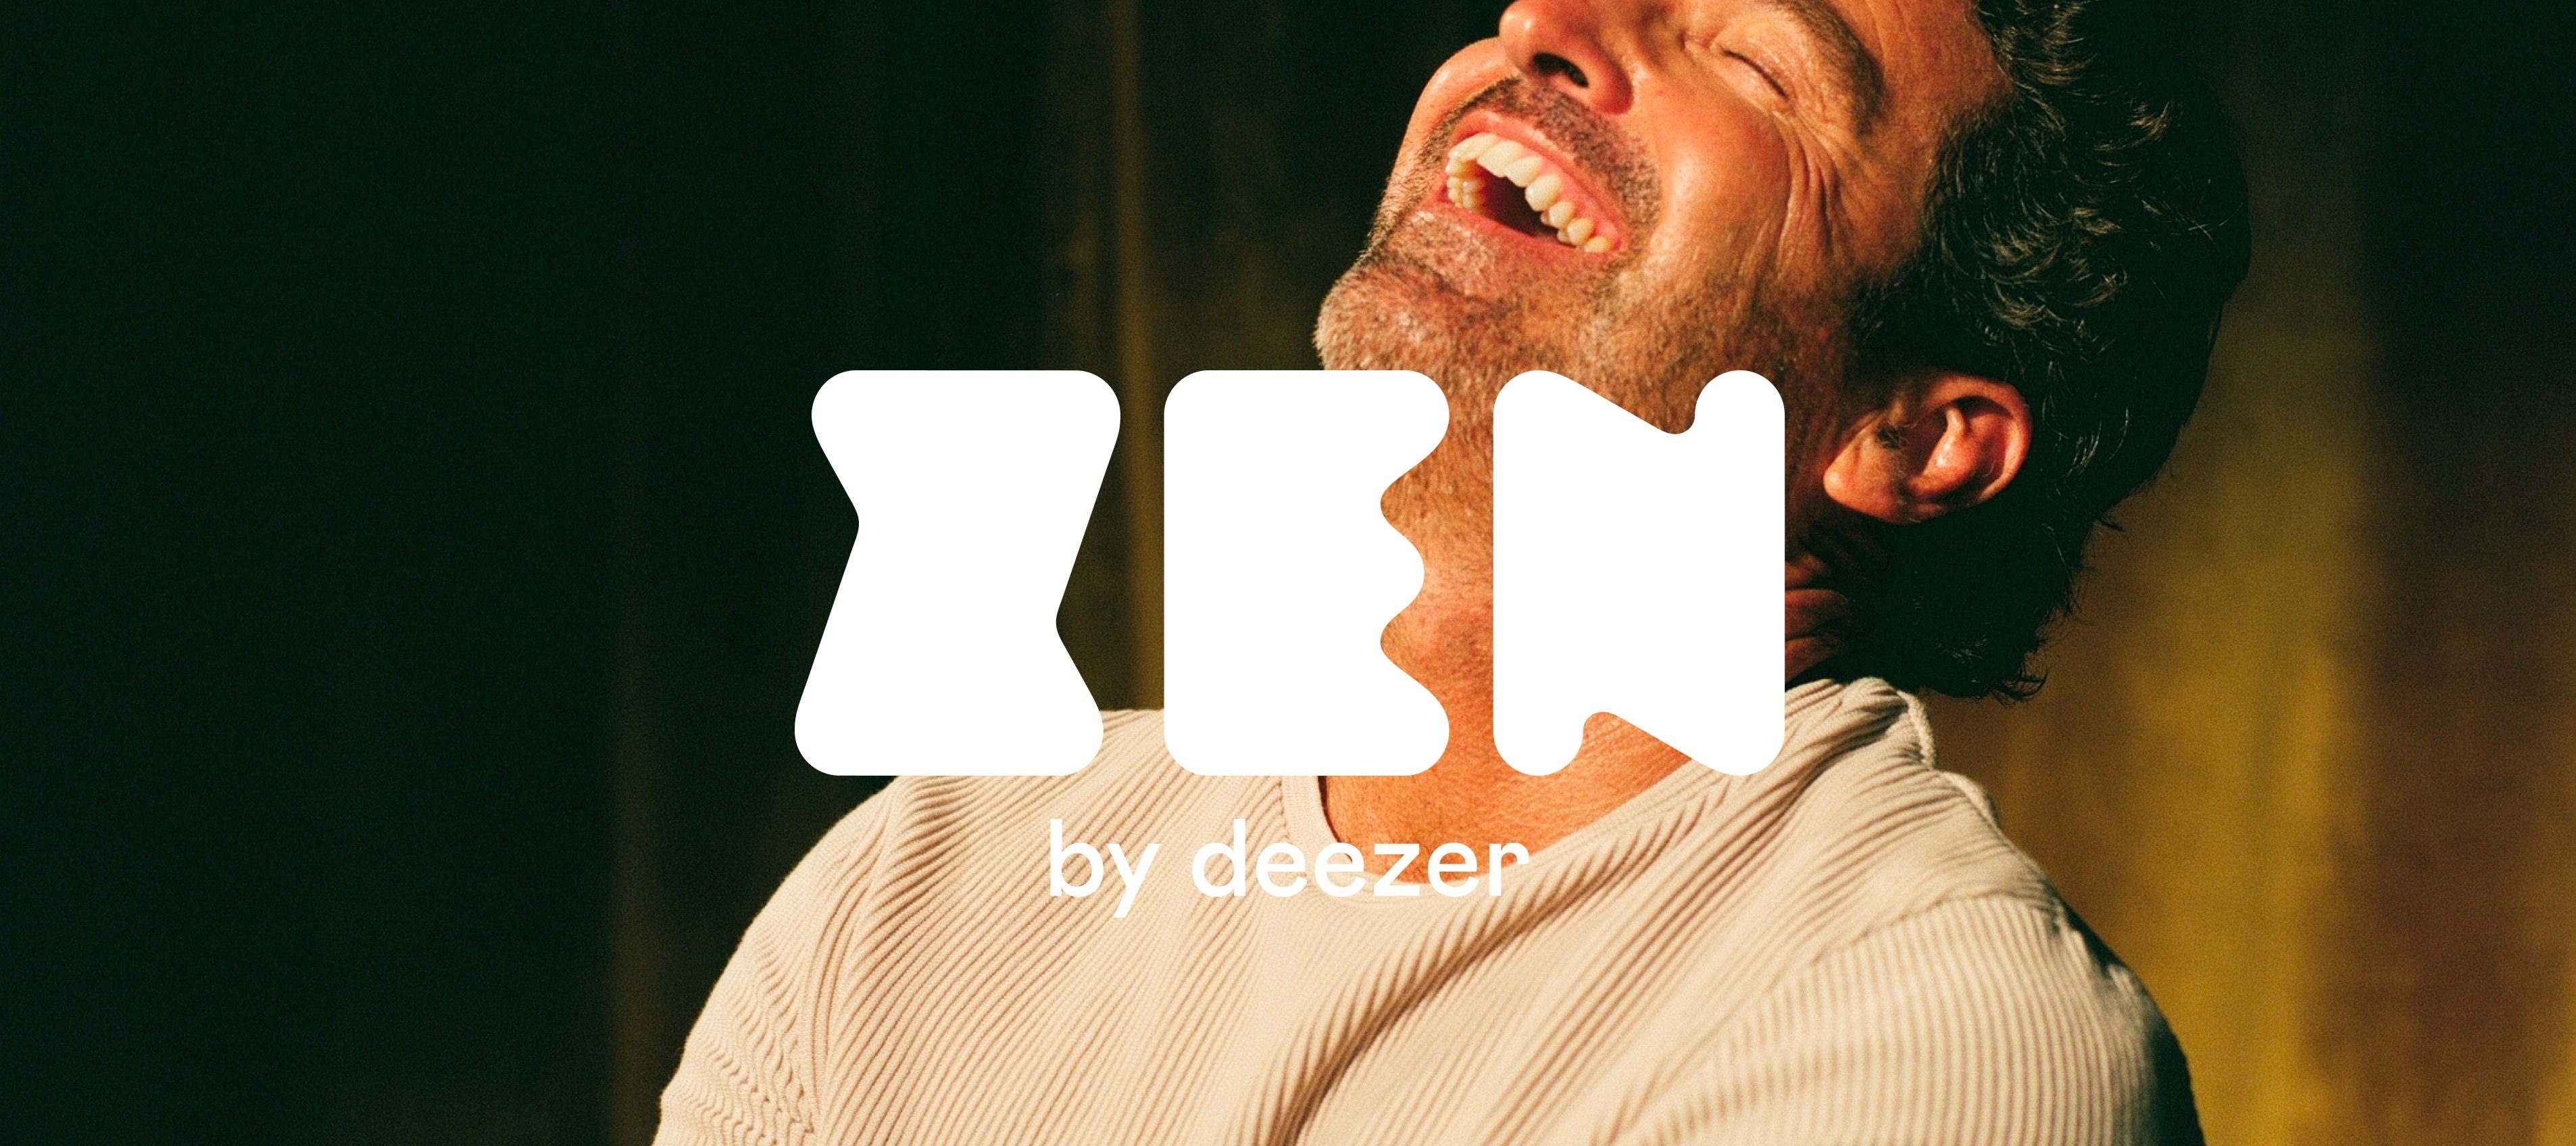 Comment fonctionne l'app Zen by Deezer ?